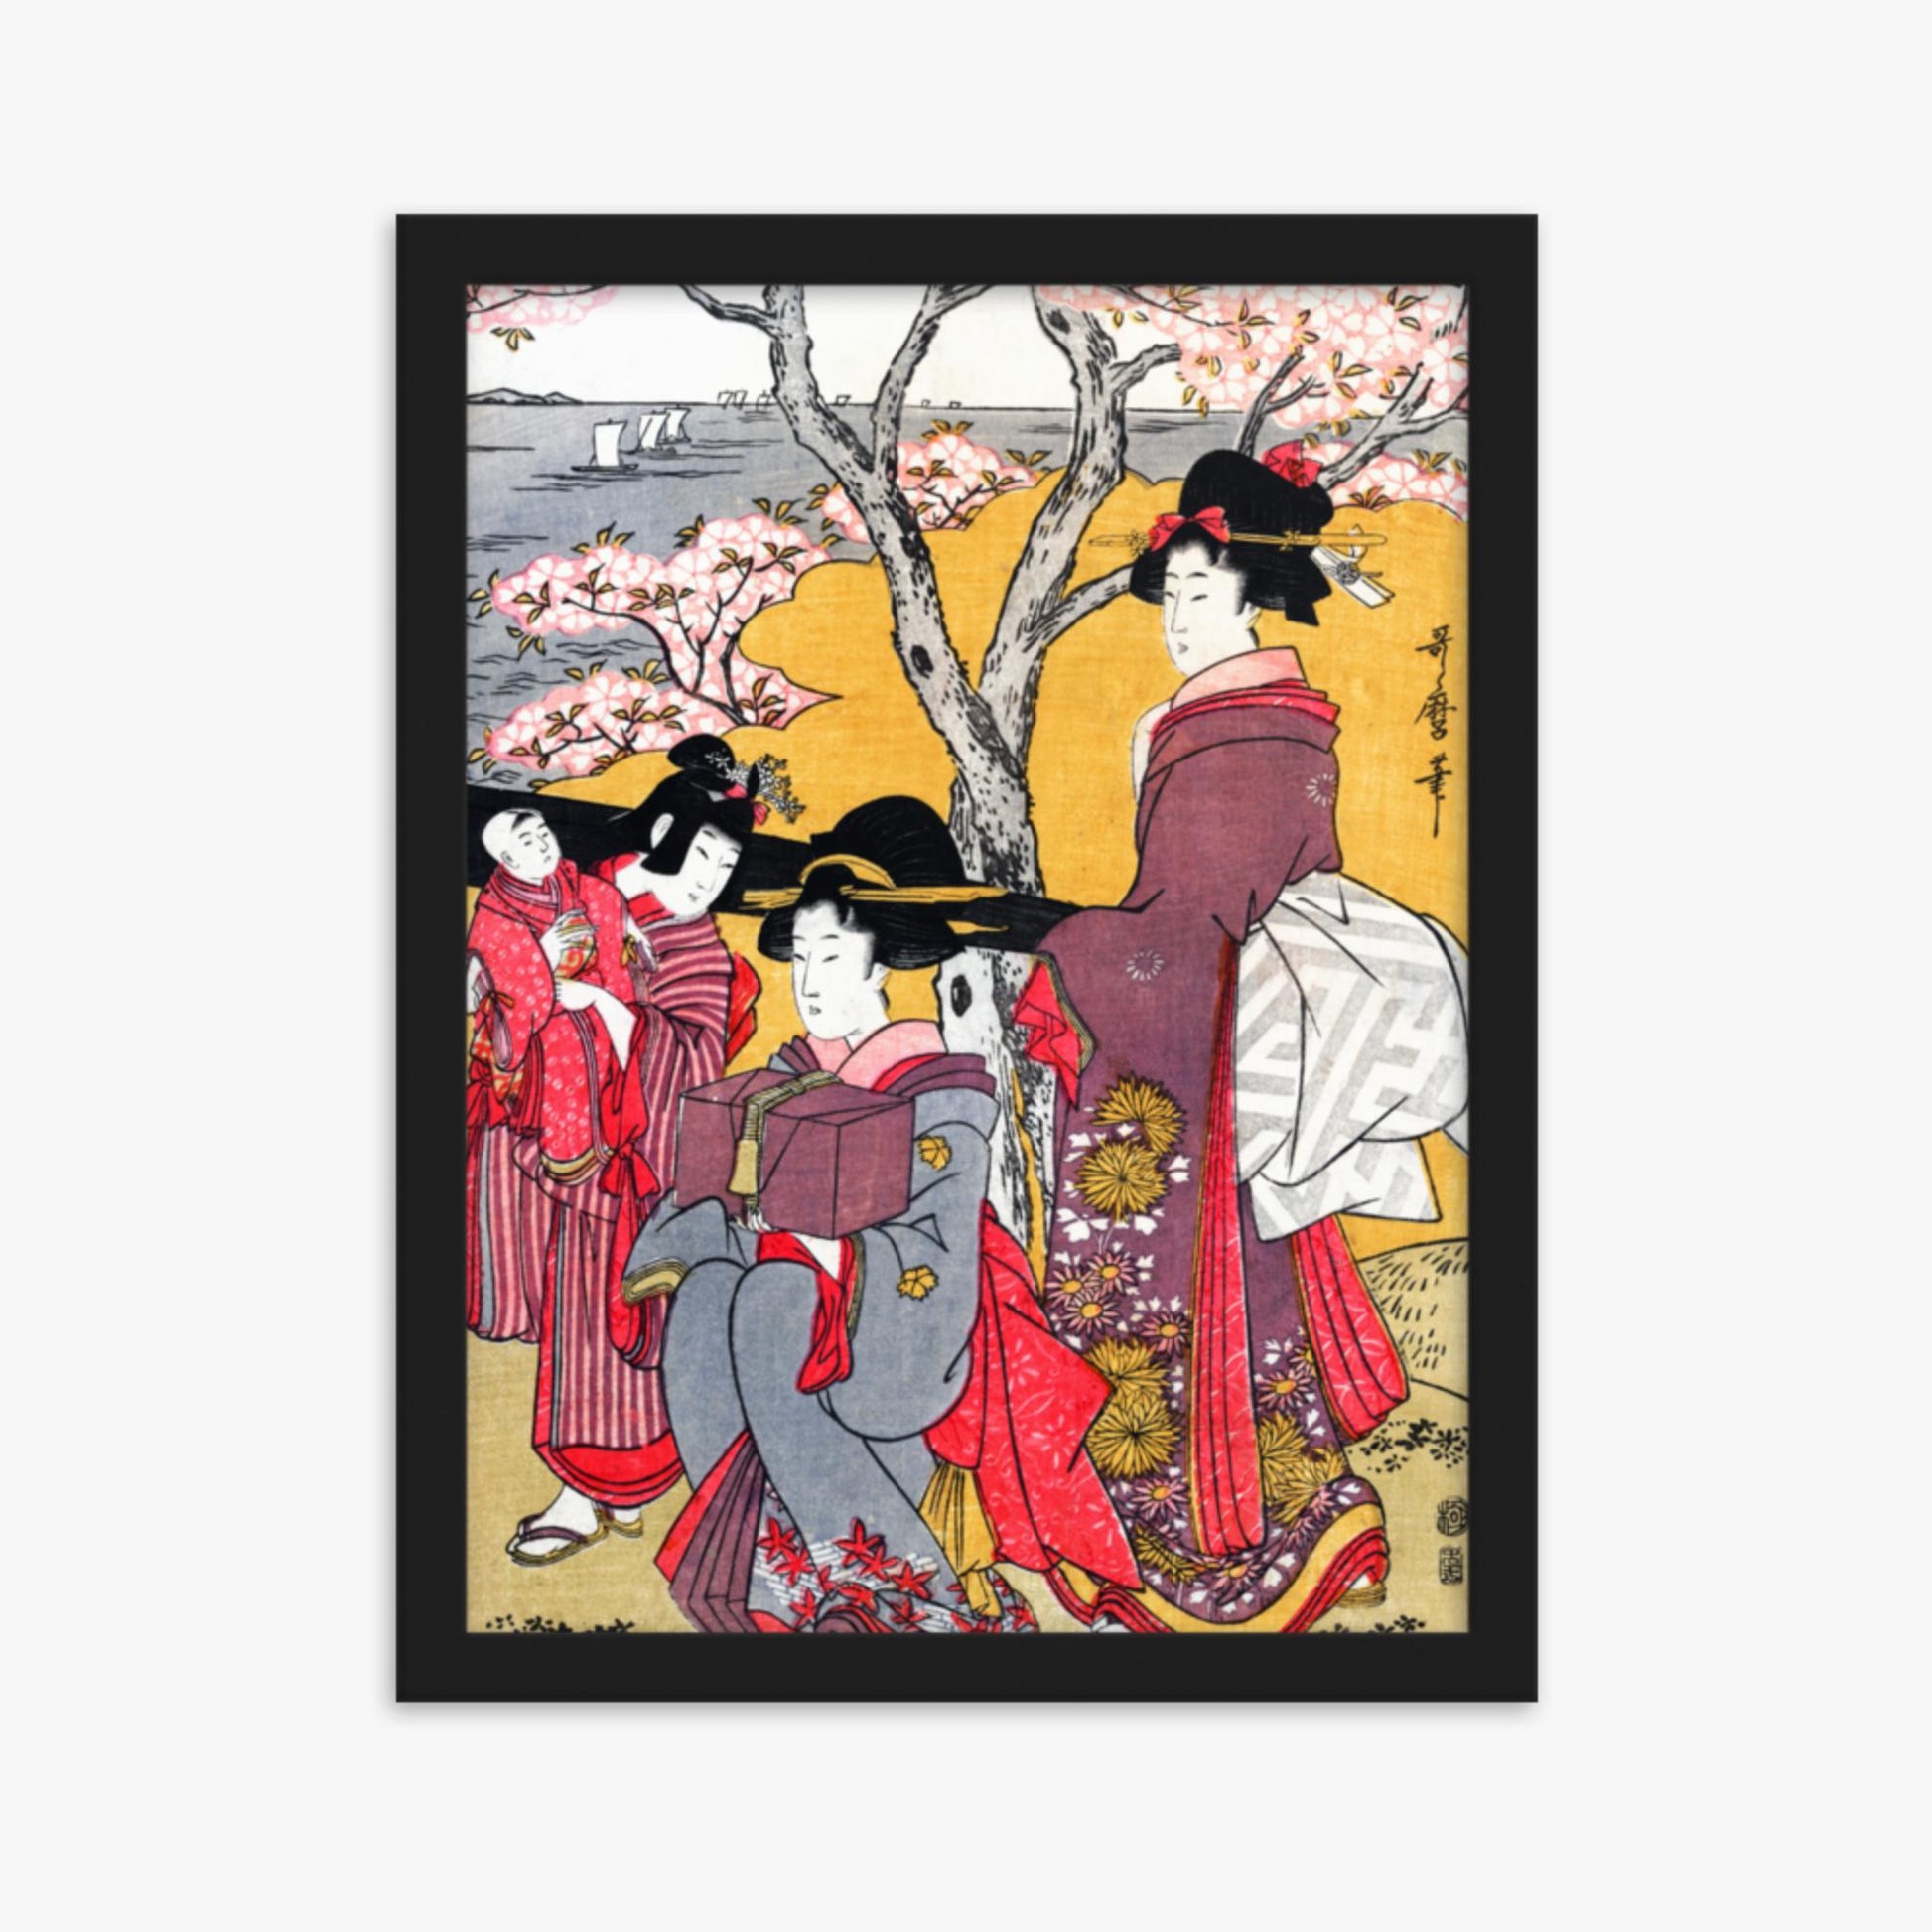 Kitagawa Utamaro - Cherry-viewing at Gotenyama 30x40 cm Poster With Black Frame